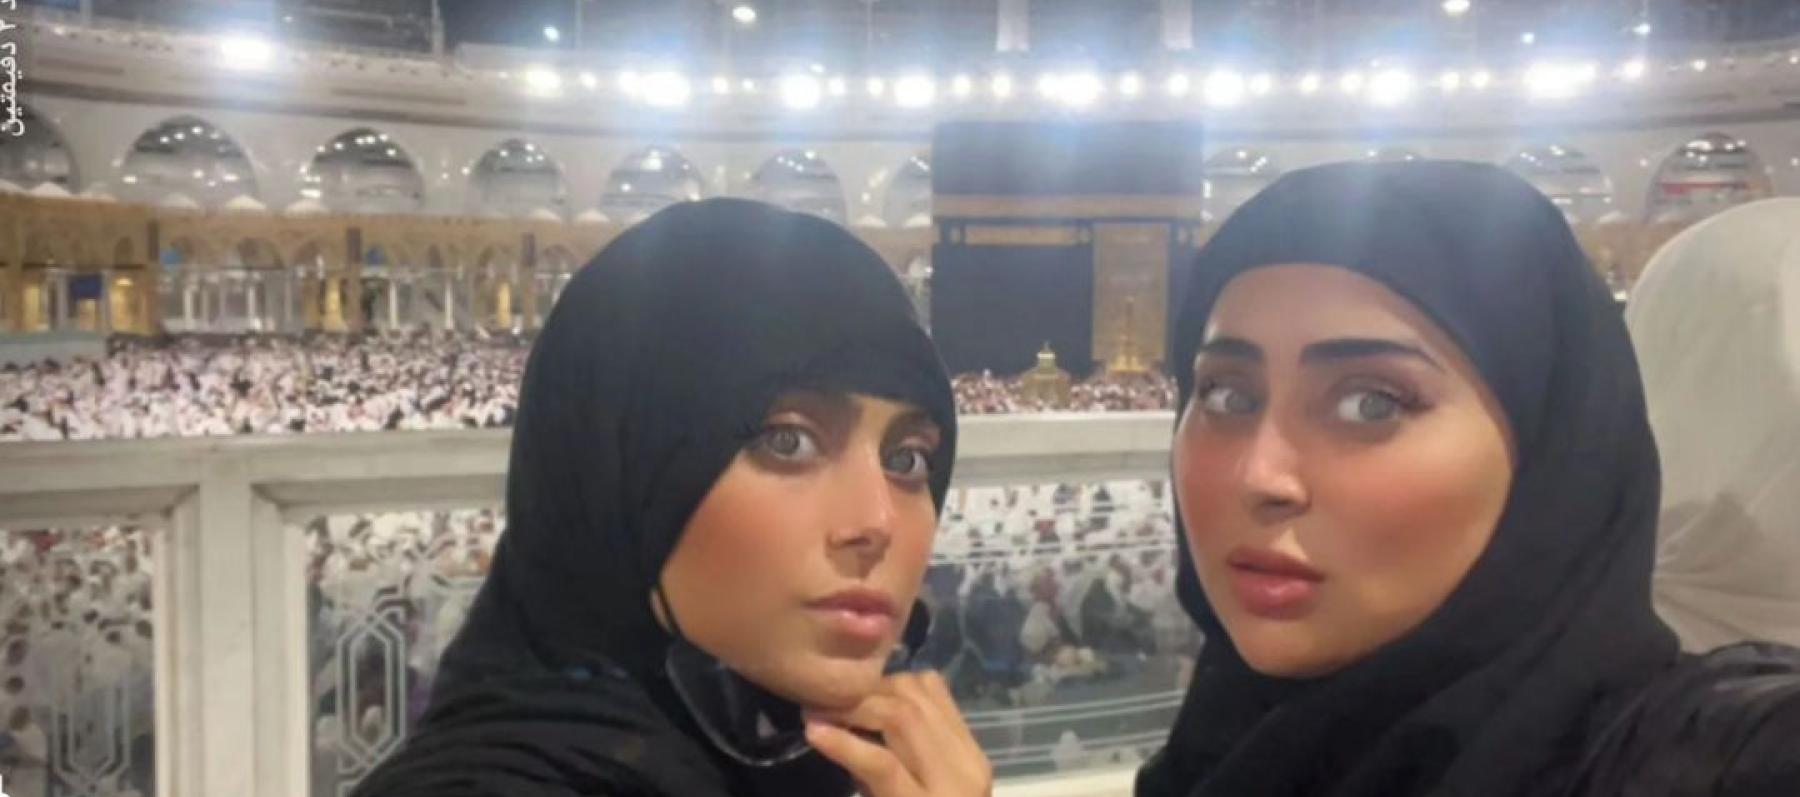 الشقيقتان شيلاء و شيماء سبت - صورة معدلة من السيوشيال ميديا